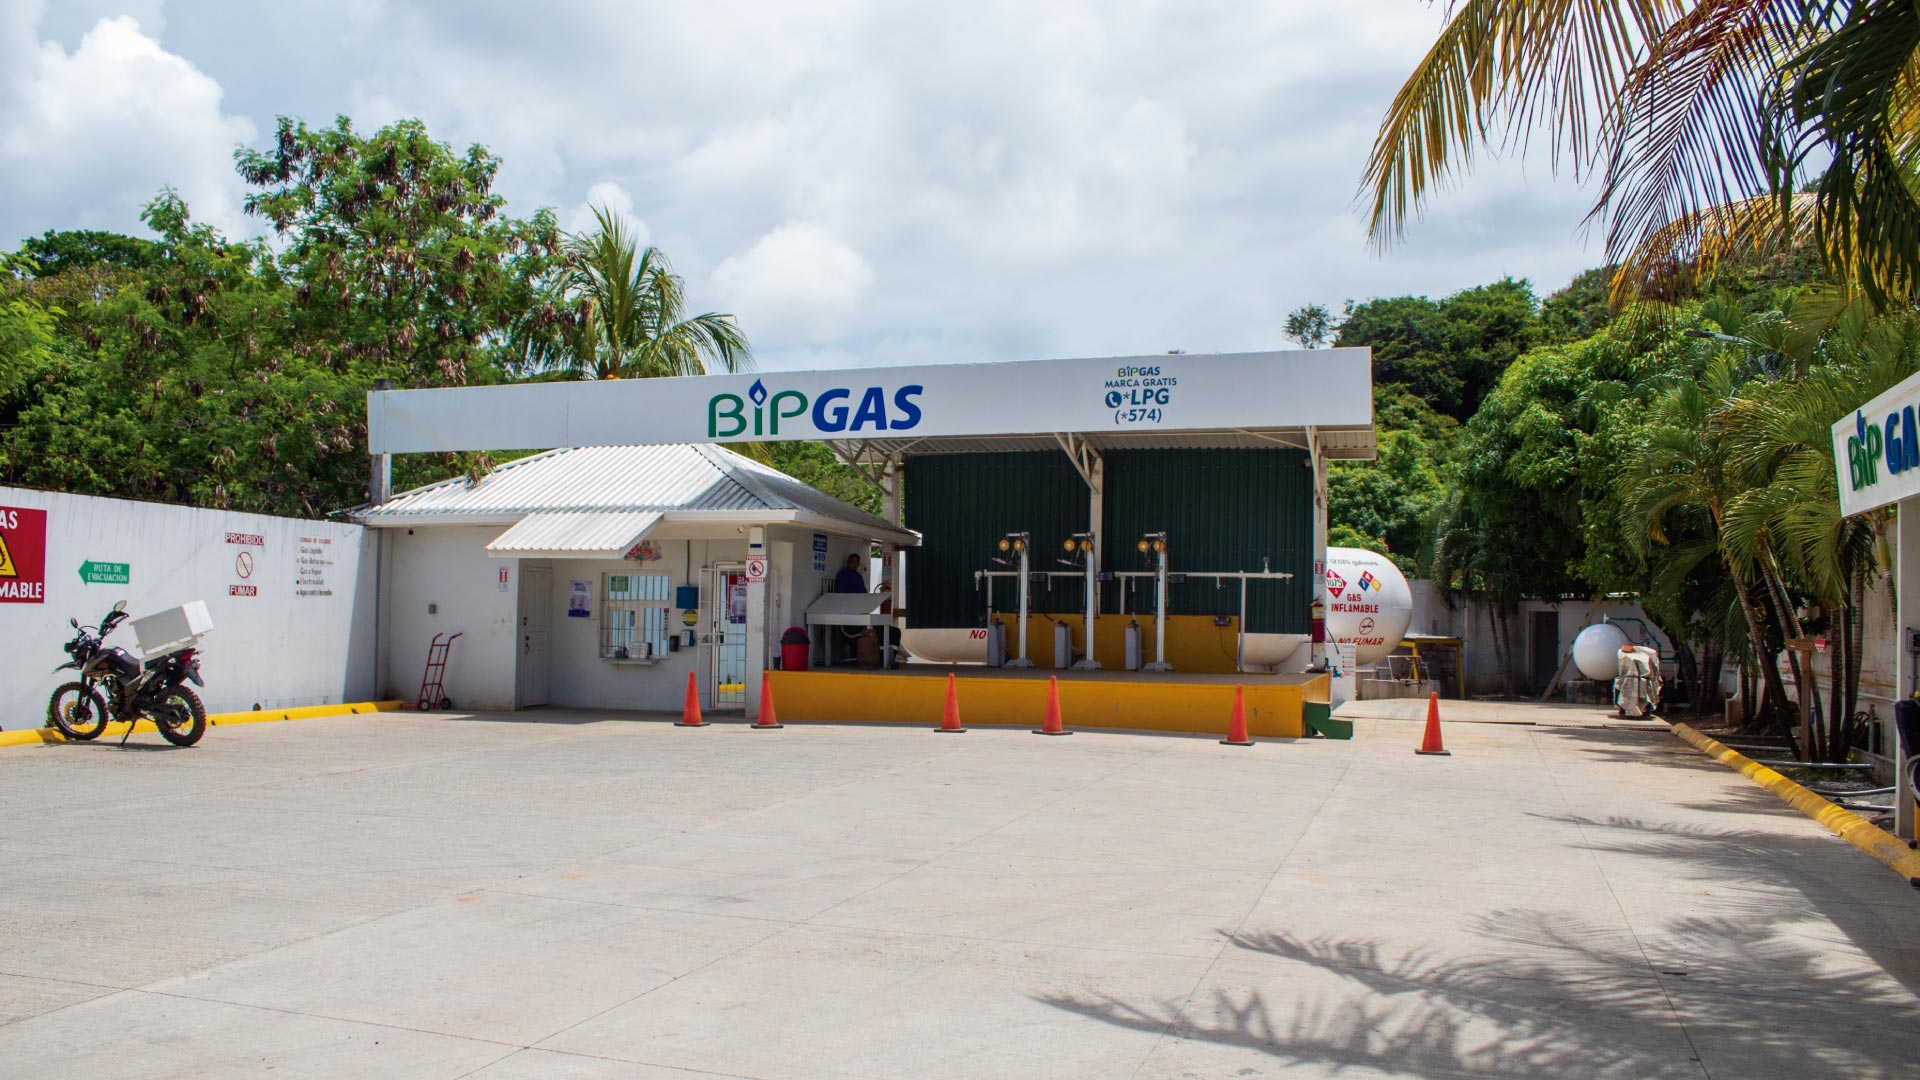 Estación de BIP GAS Coxen Hole, Roatan Honduras